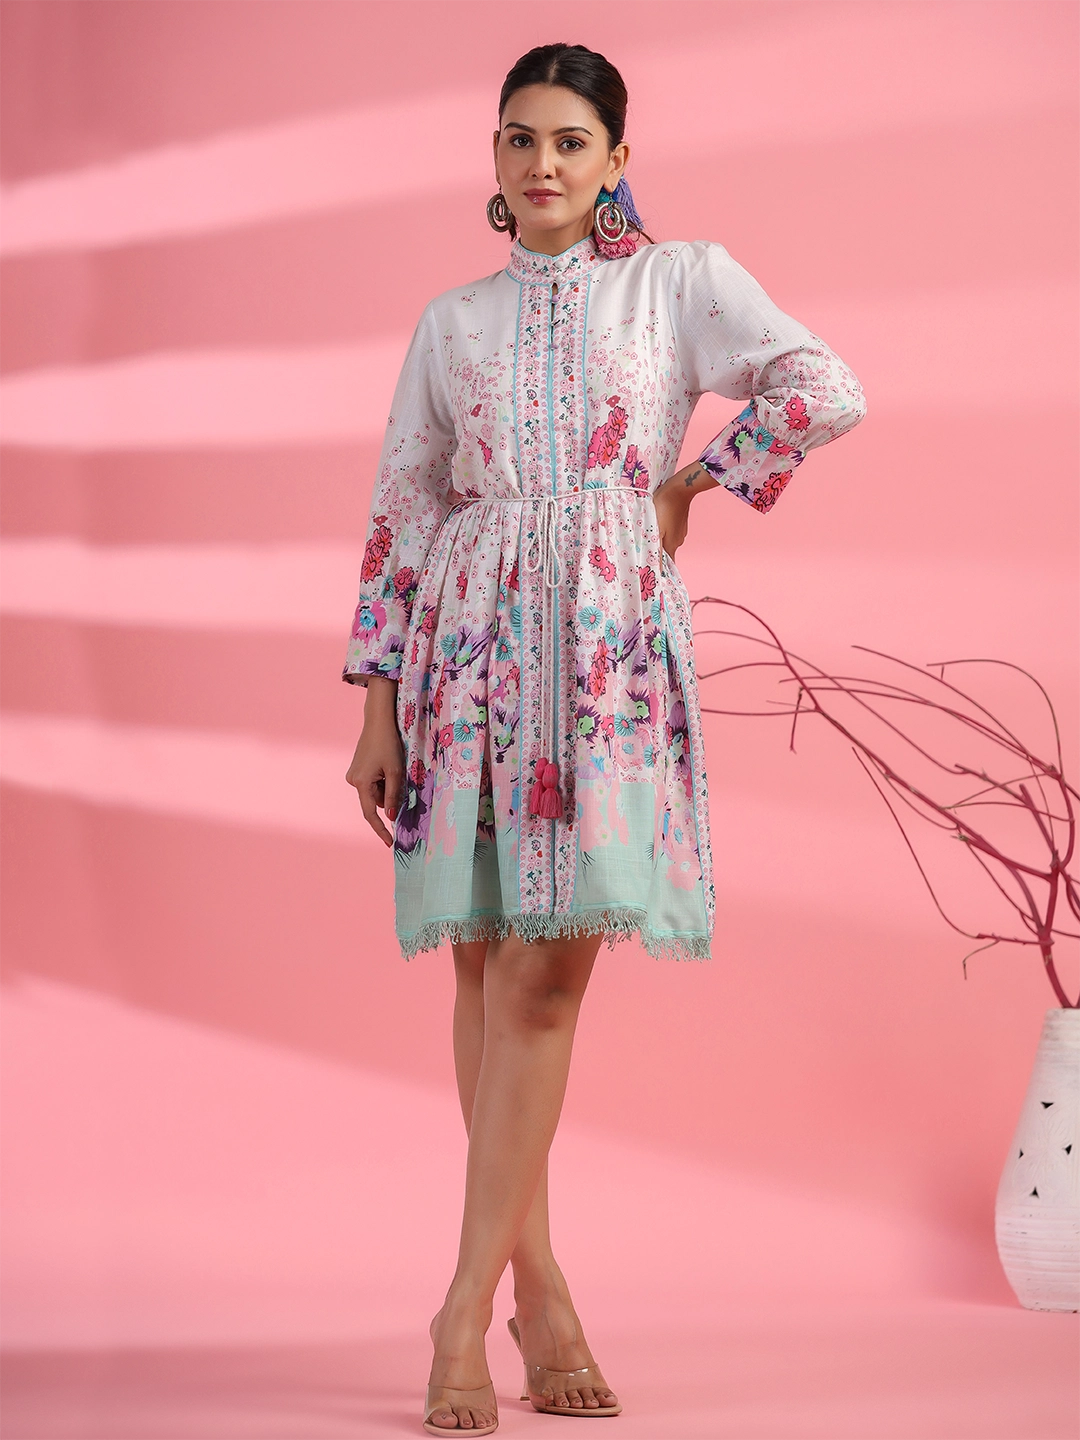 Blossom Blush: Pink Floral Short Dress